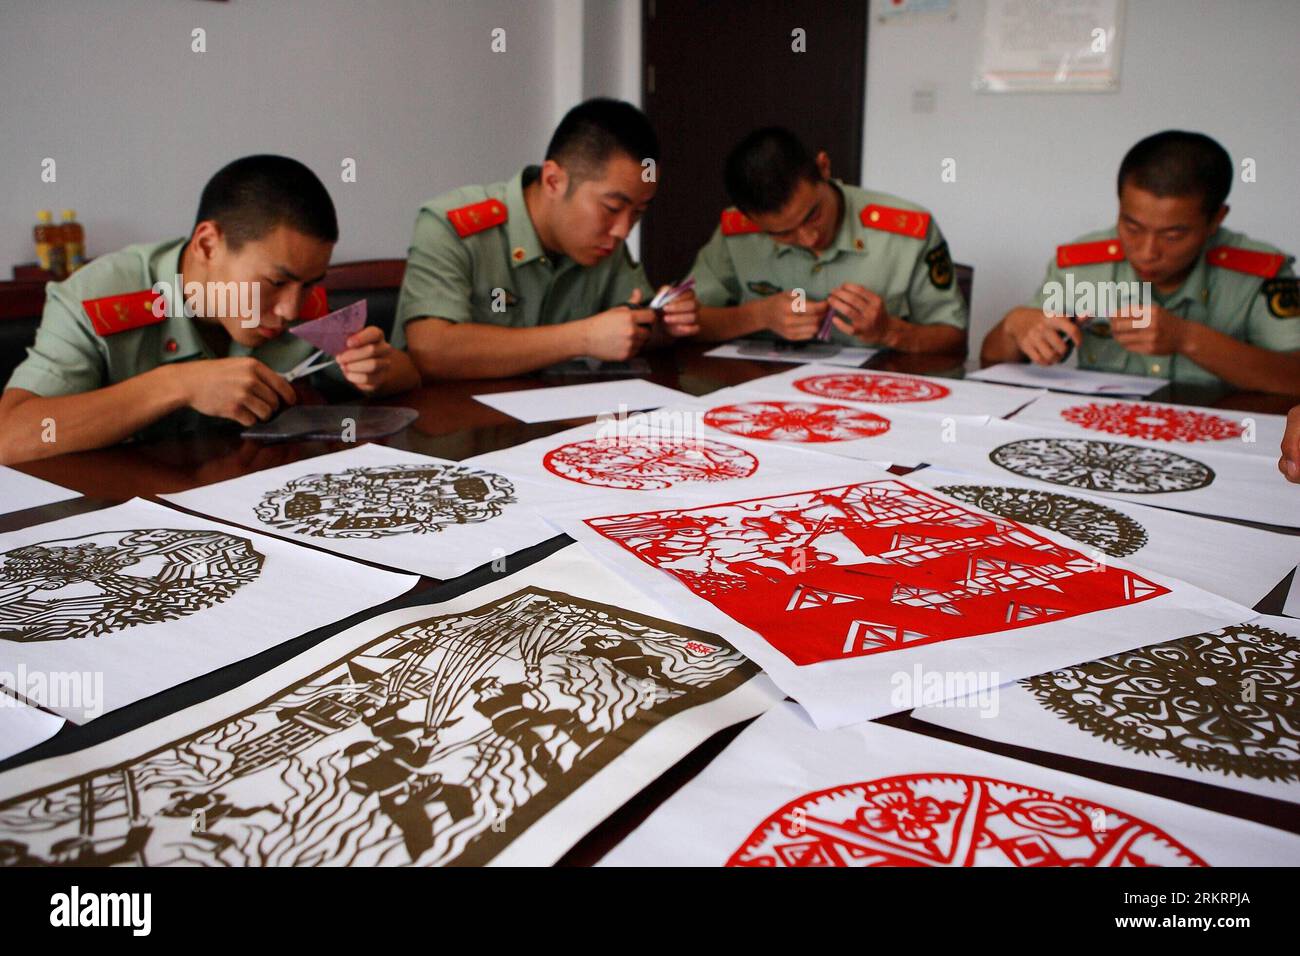 Bildnummer : 58289630 Datum : 30.07.2012 Copyright : imago/Xinhua (120730) -- HEFEI, 30 juillet 2012 (Xinhua) -- des soldats d'une brigade de pompiers apprennent à faire des coupures de papier à Hefei, capitale de la province d'Anhui de l'est de la Chine, 30 juillet 2012. Fu Huakun, un vieil artiste engagé dans le design depuis plus de 40 ans, a visité les pompiers avec un de ses apprentis Qi Shengli lundi, enseignant aux pompiers les compétences de la découpe du papier. (Xinhua/Xu Zijian) (cl) CHINE-ANHUI-HEFEI-POMPIERS-COUPE DE PAPIER (CN) PUBLICATIONxNOTxINxCHN Gesellschaft xda x2x 2012 quer o0 Papierschnitt Schere Banque D'Images